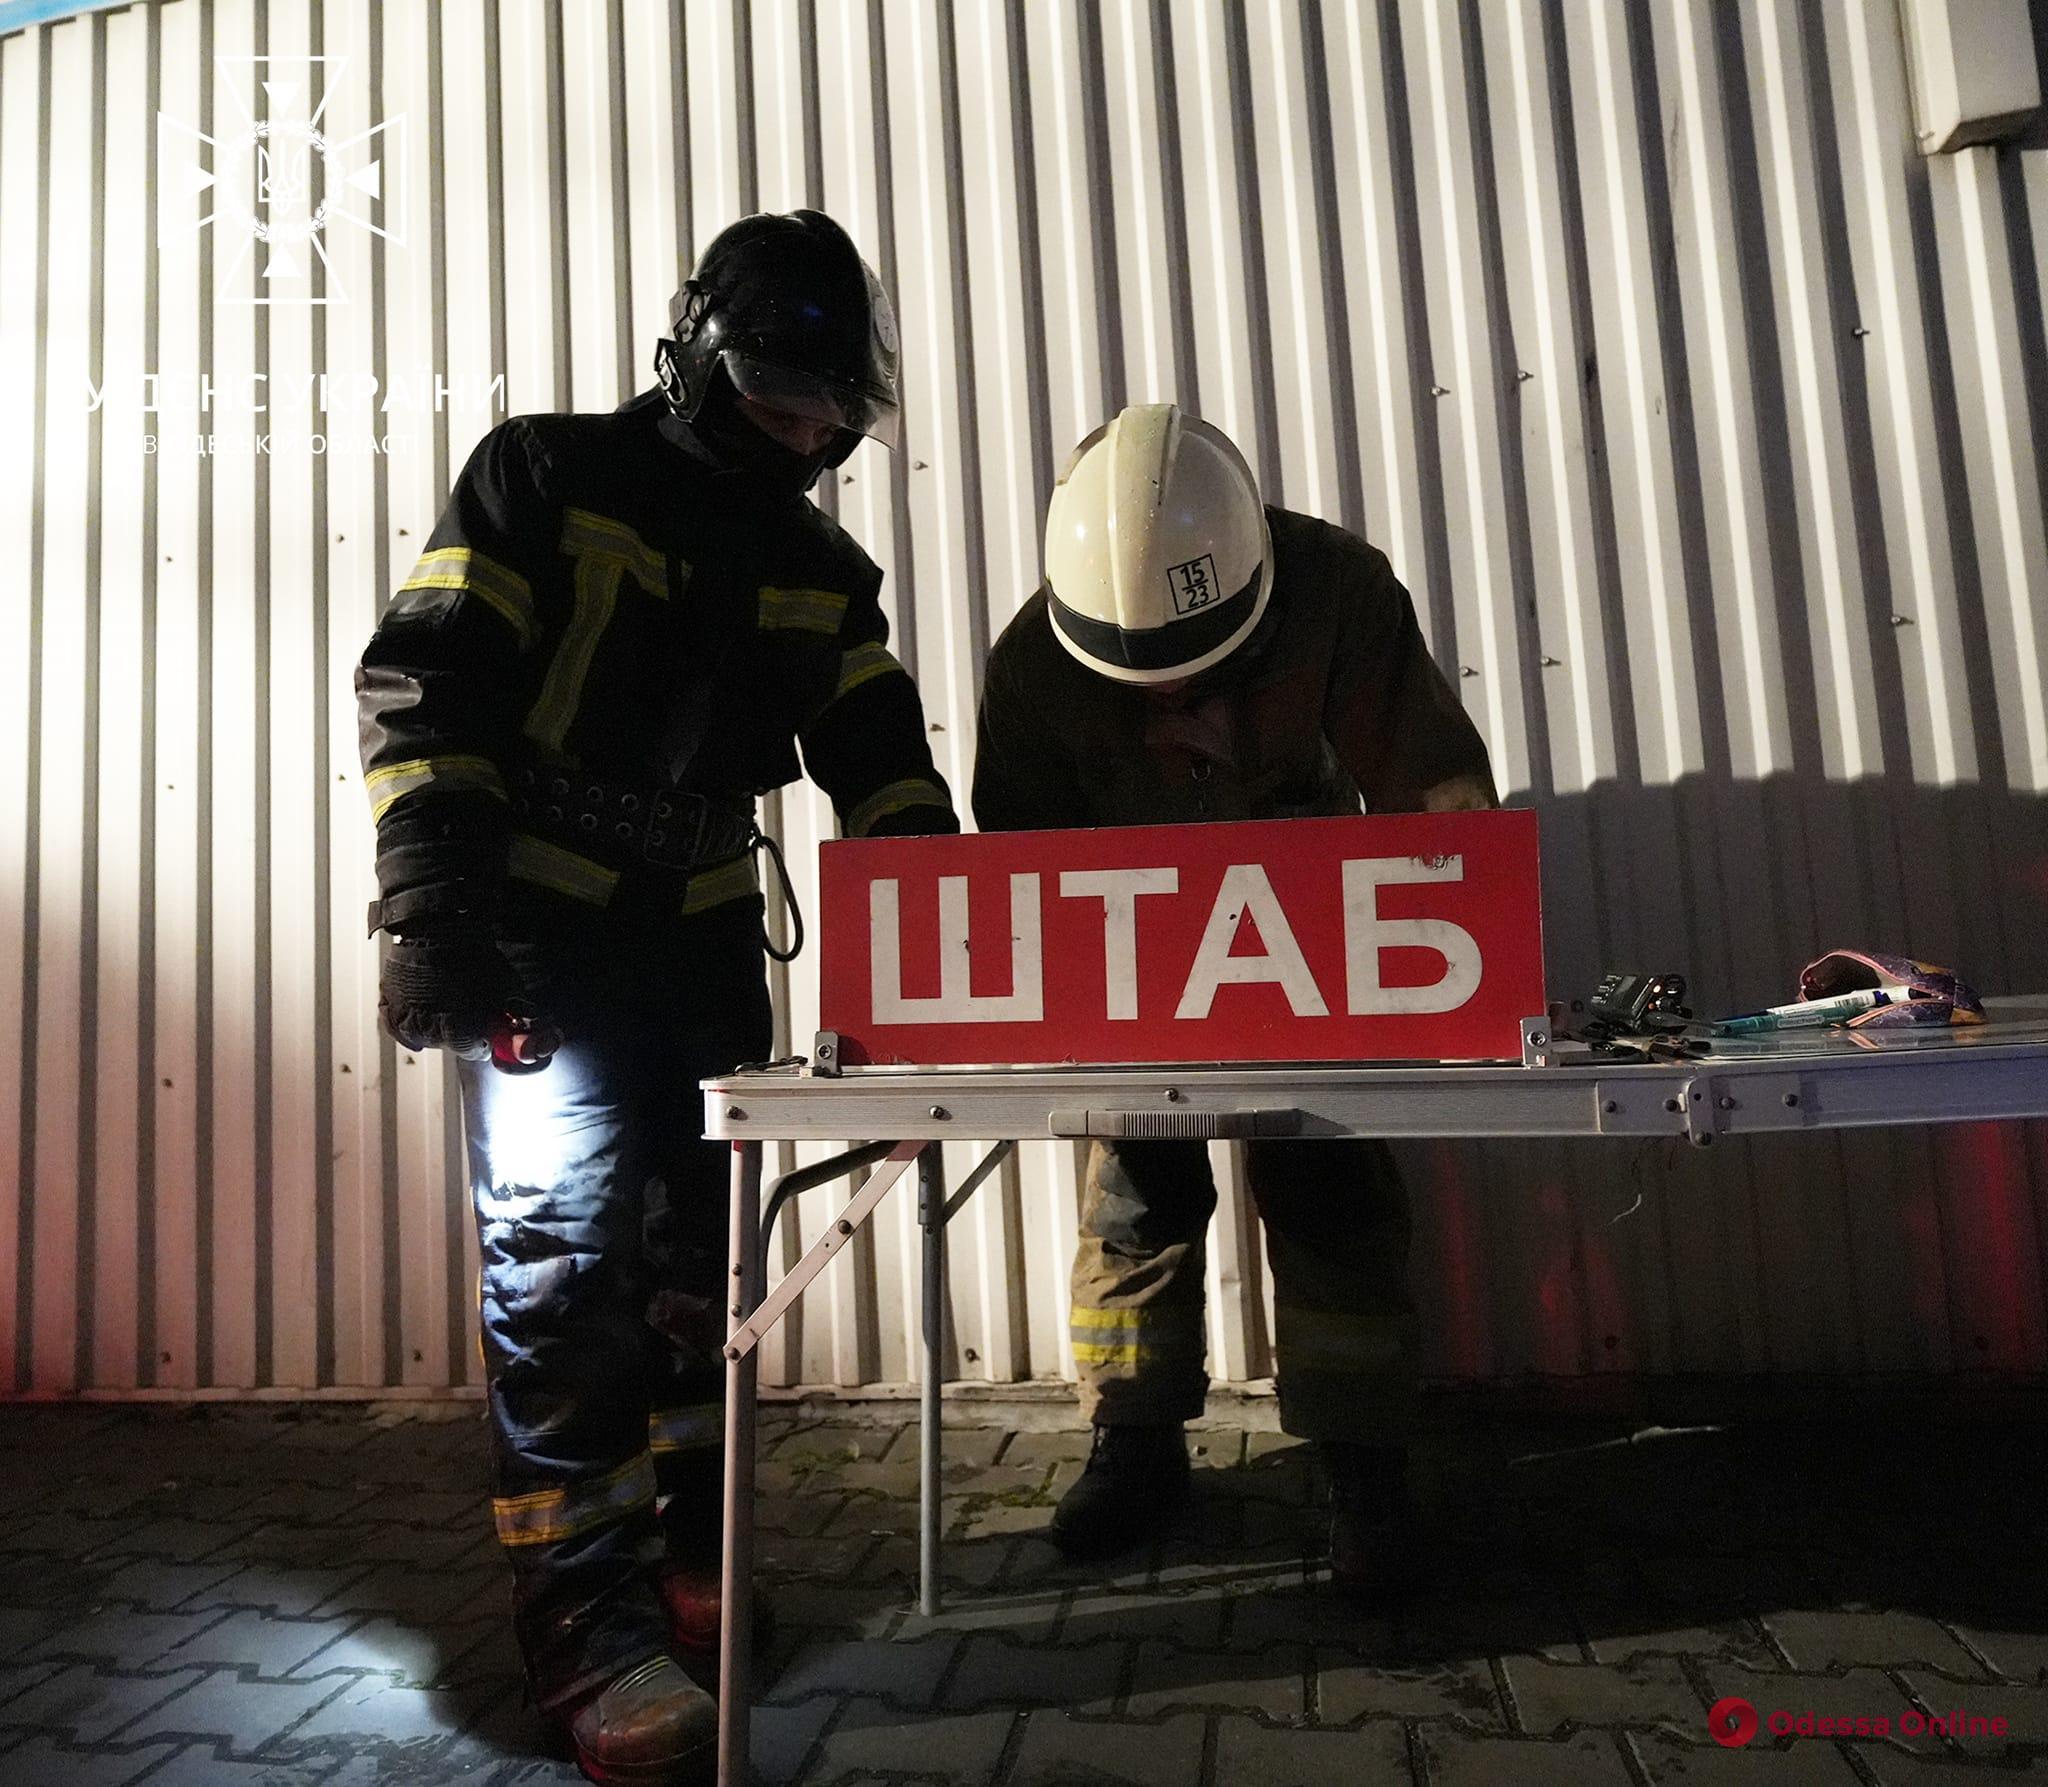 Под Одессой горели торговые павильоны (фото, видео)